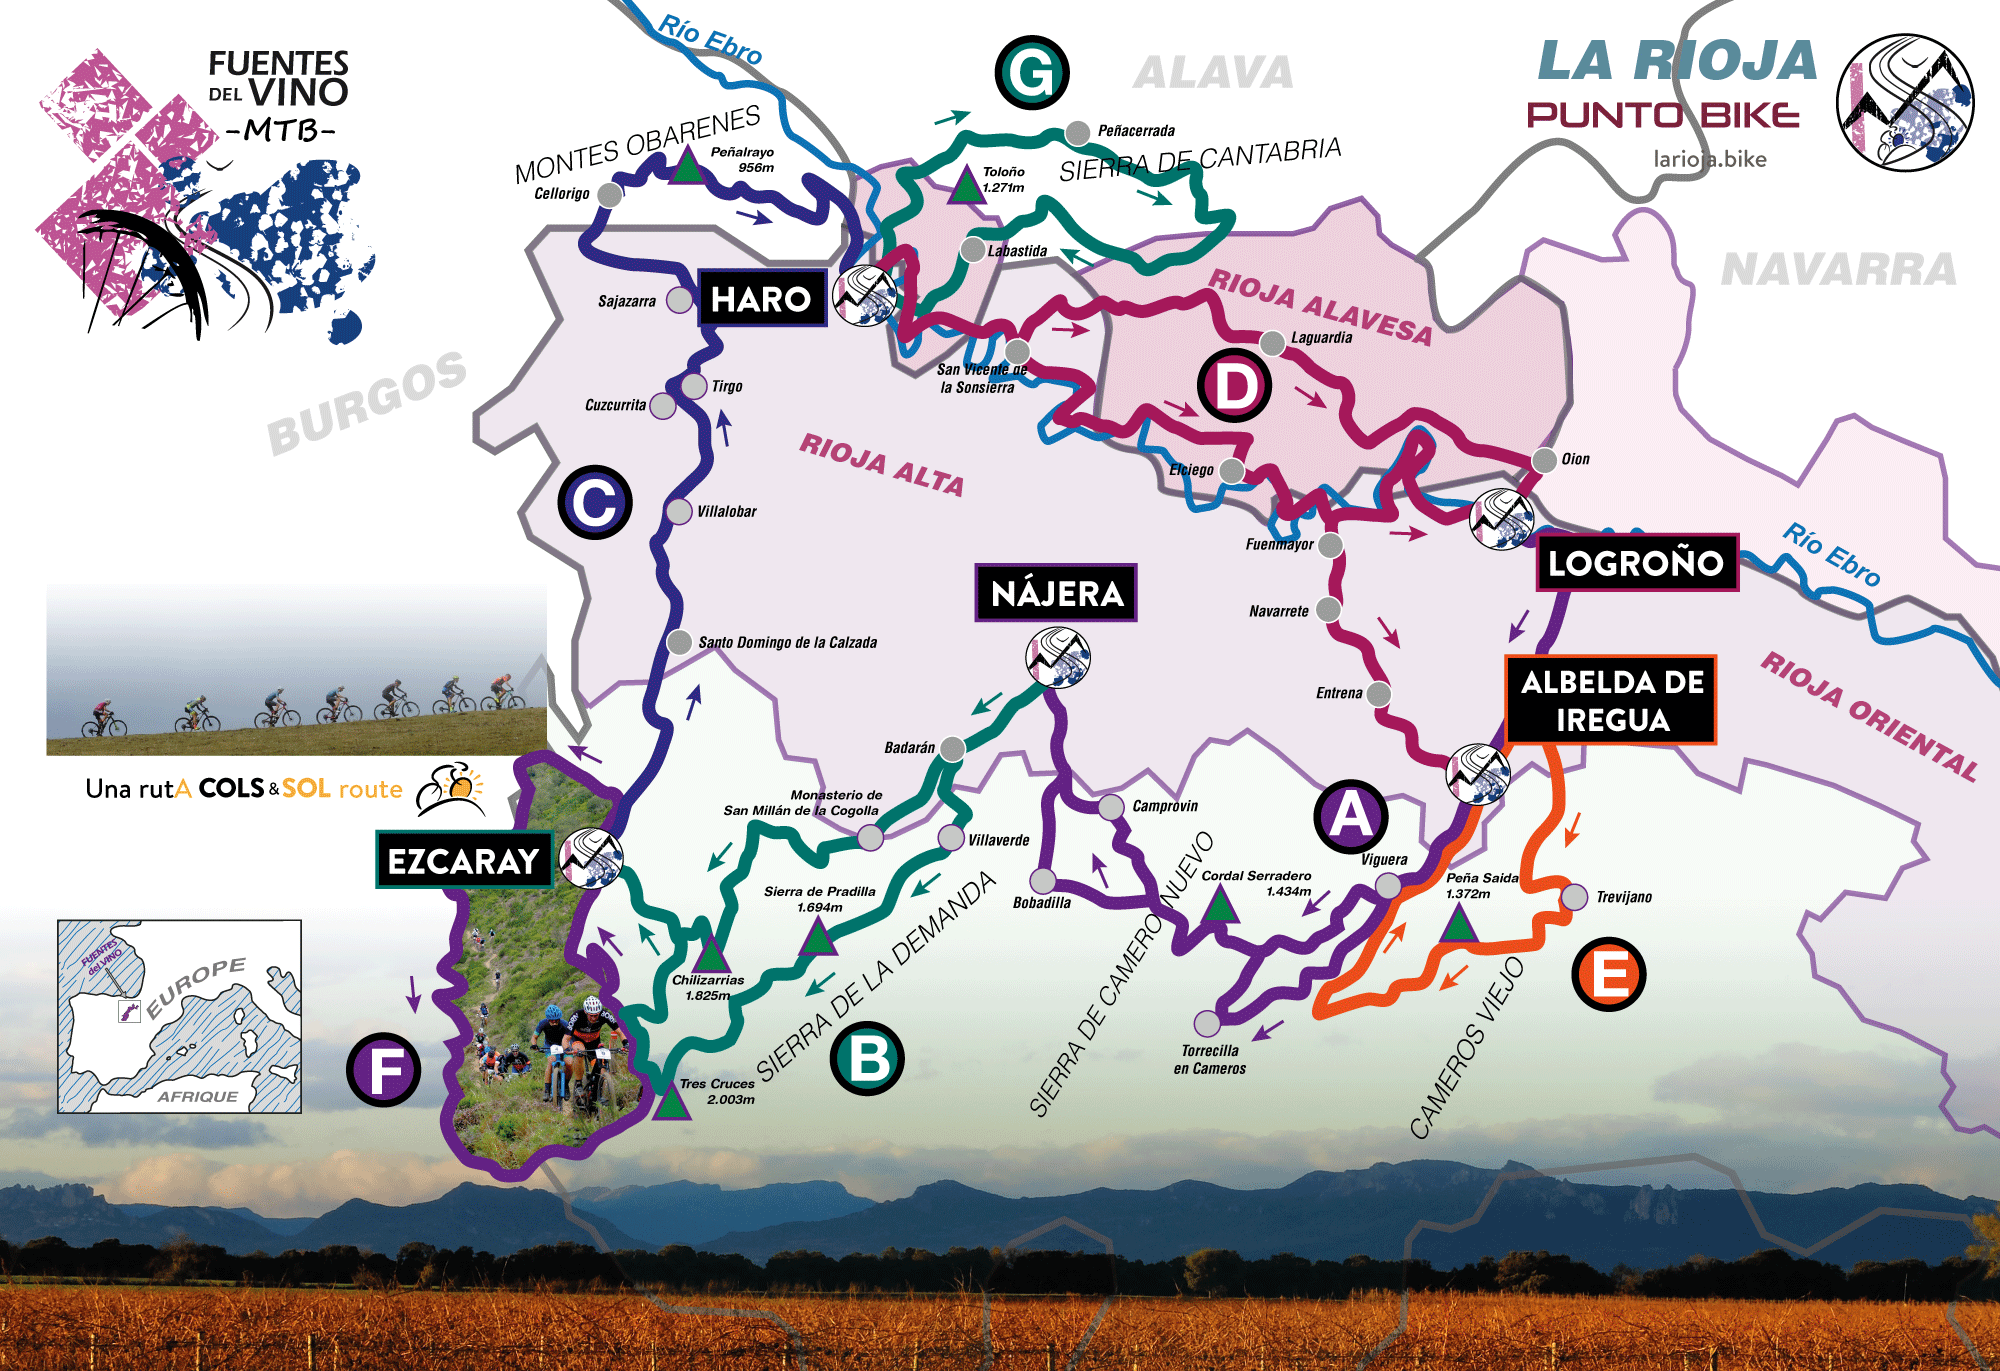 Fuentes-del-Vino-MTB-map